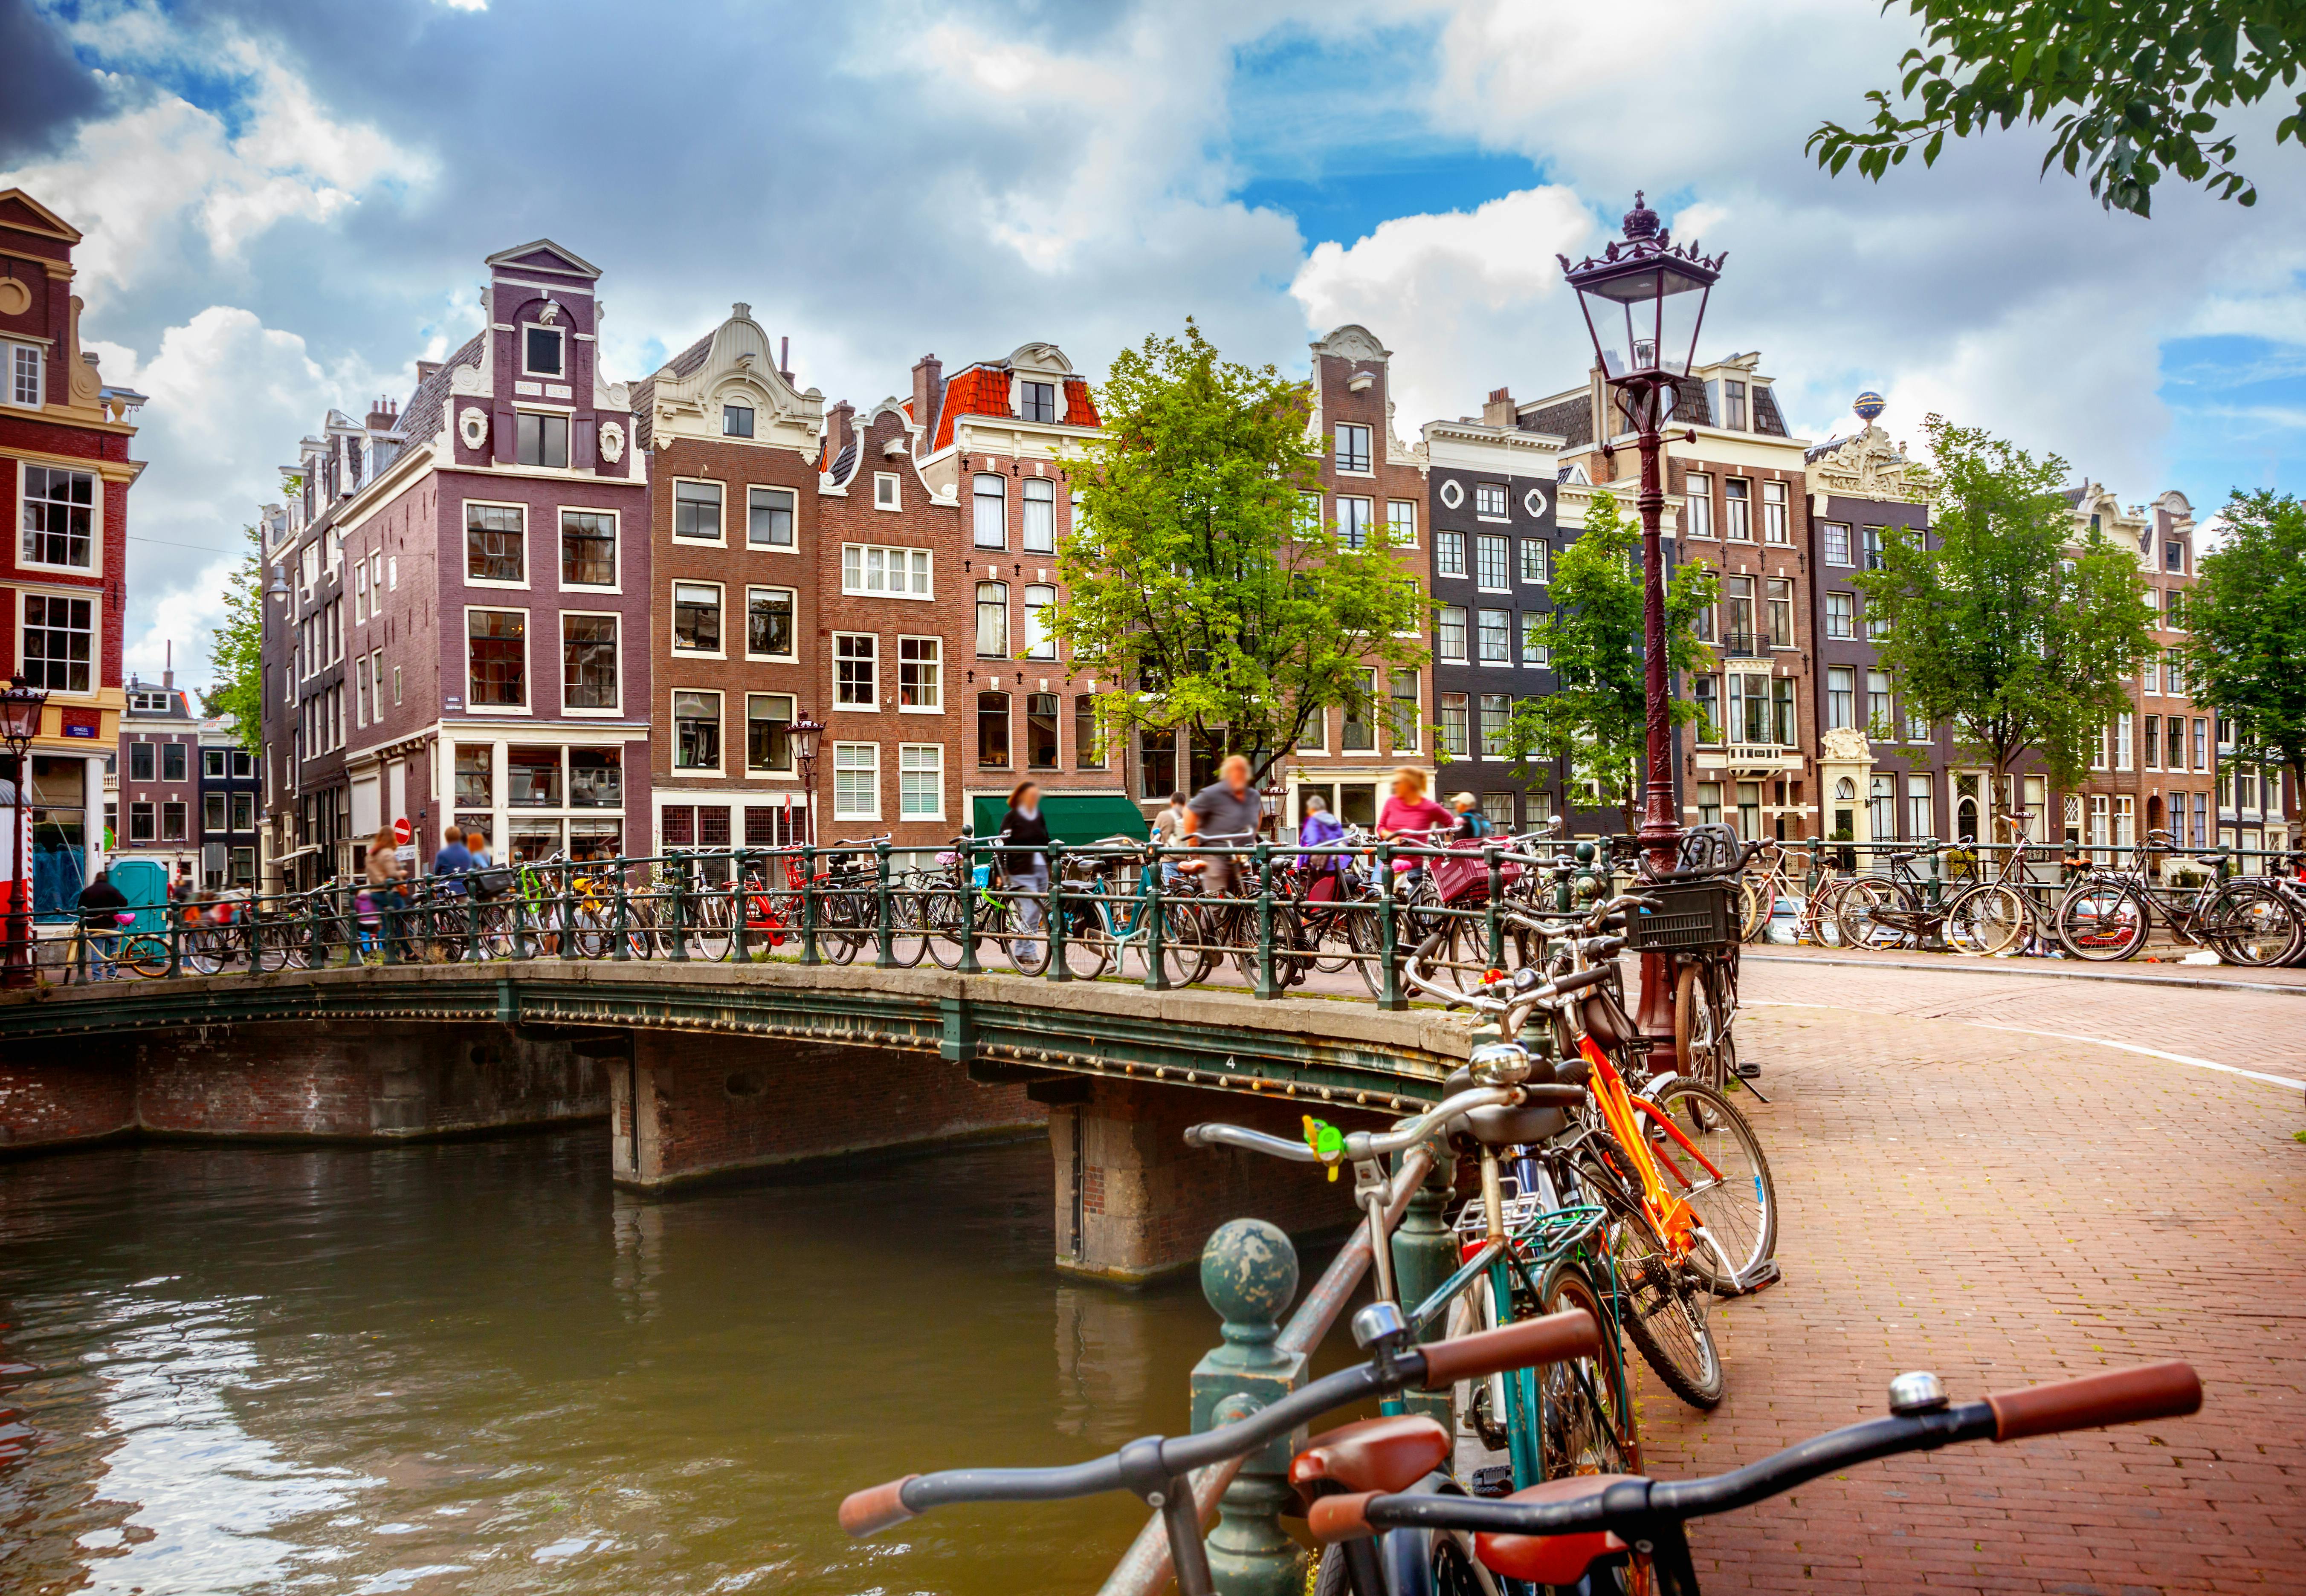 Fietsverhuur voor 48 uur in Amsterdam met stadskaart 